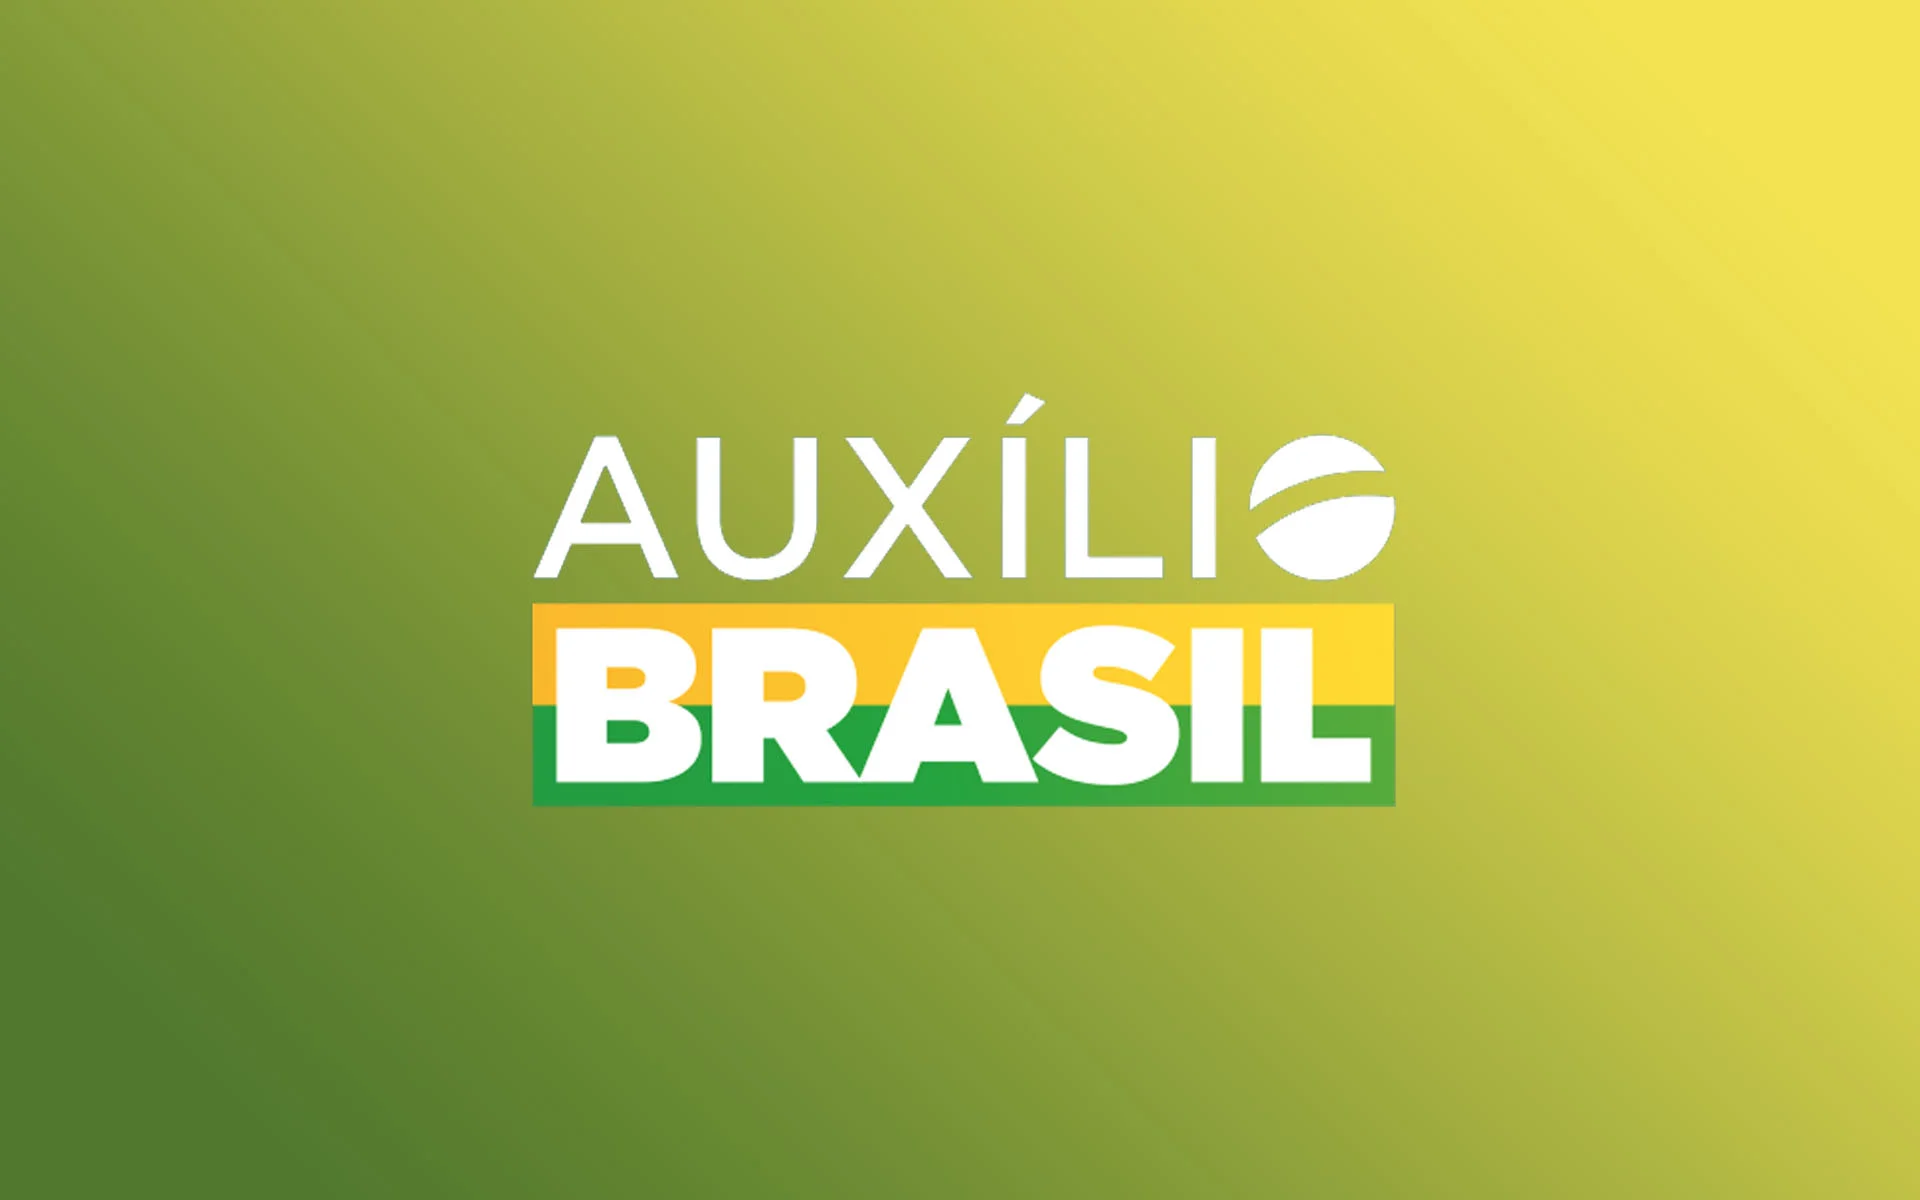 Auxílio Brasil: Quantas parcelas terá o Empréstimo Consignado?